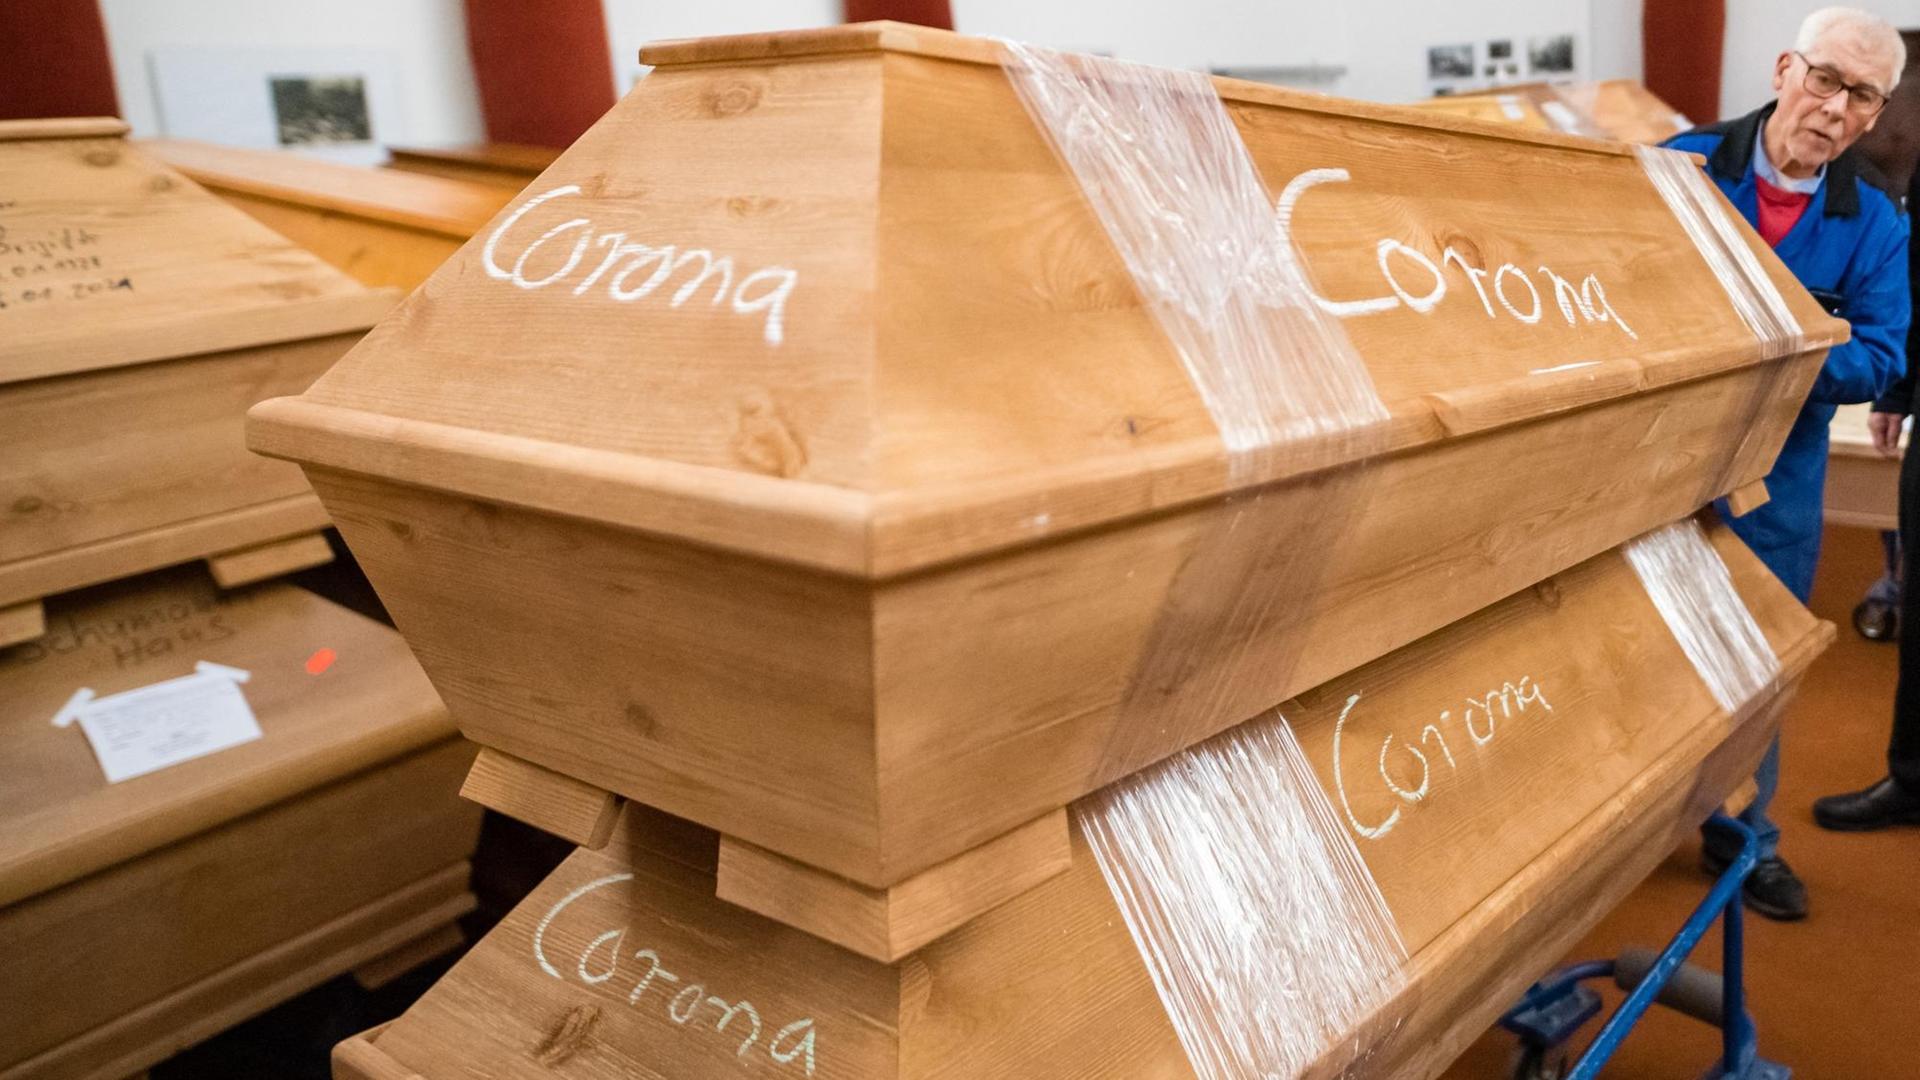 In den Krematorien stapeln sich die Särge mit der Aufschrift "Corona".